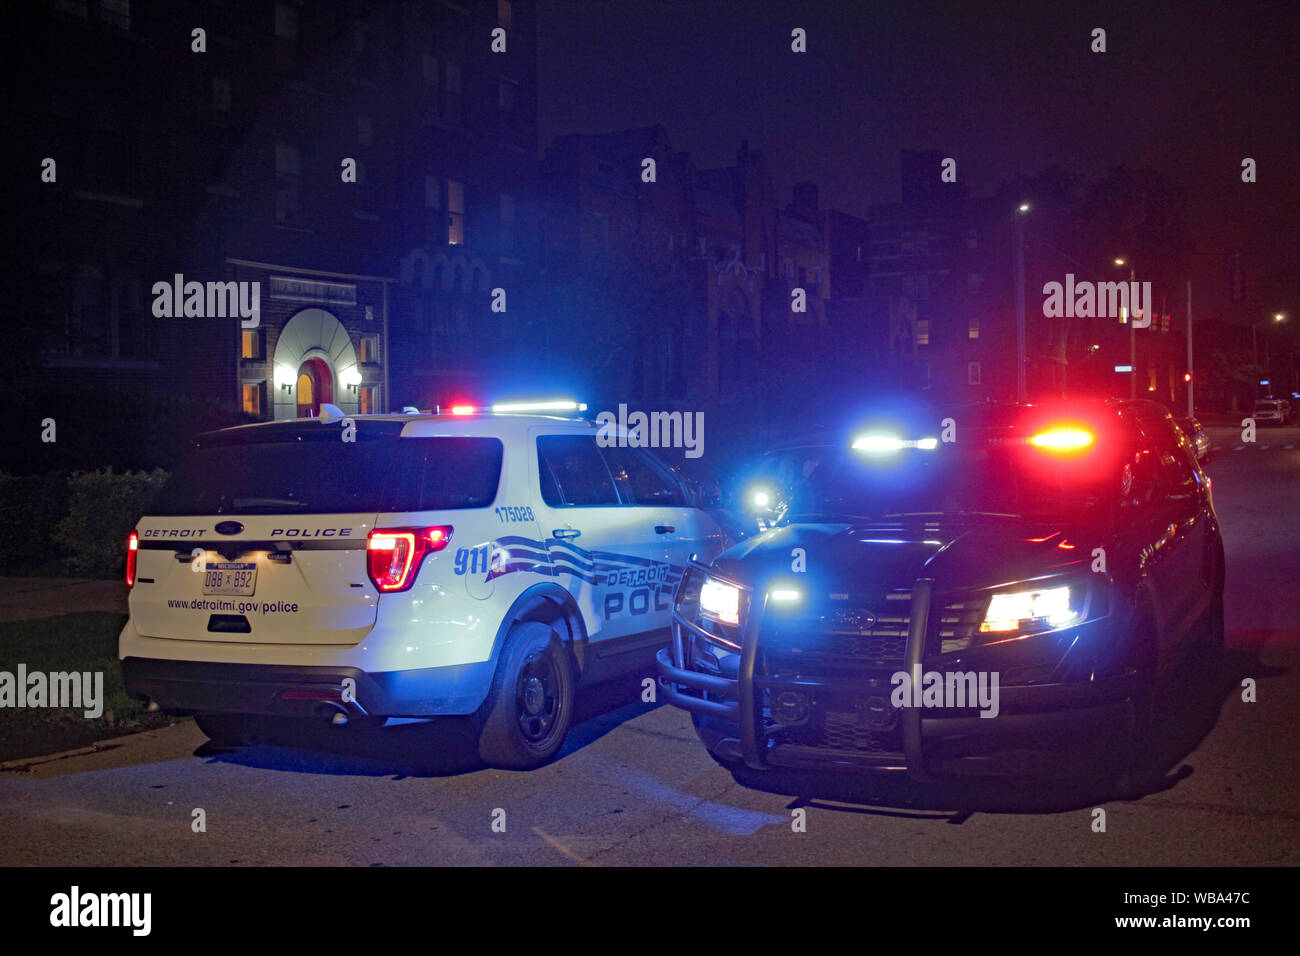 Luces De La Policía En La Noche En La Ciudad Fotos, retratos, imágenes y  fotografía de archivo libres de derecho. Image 168931371